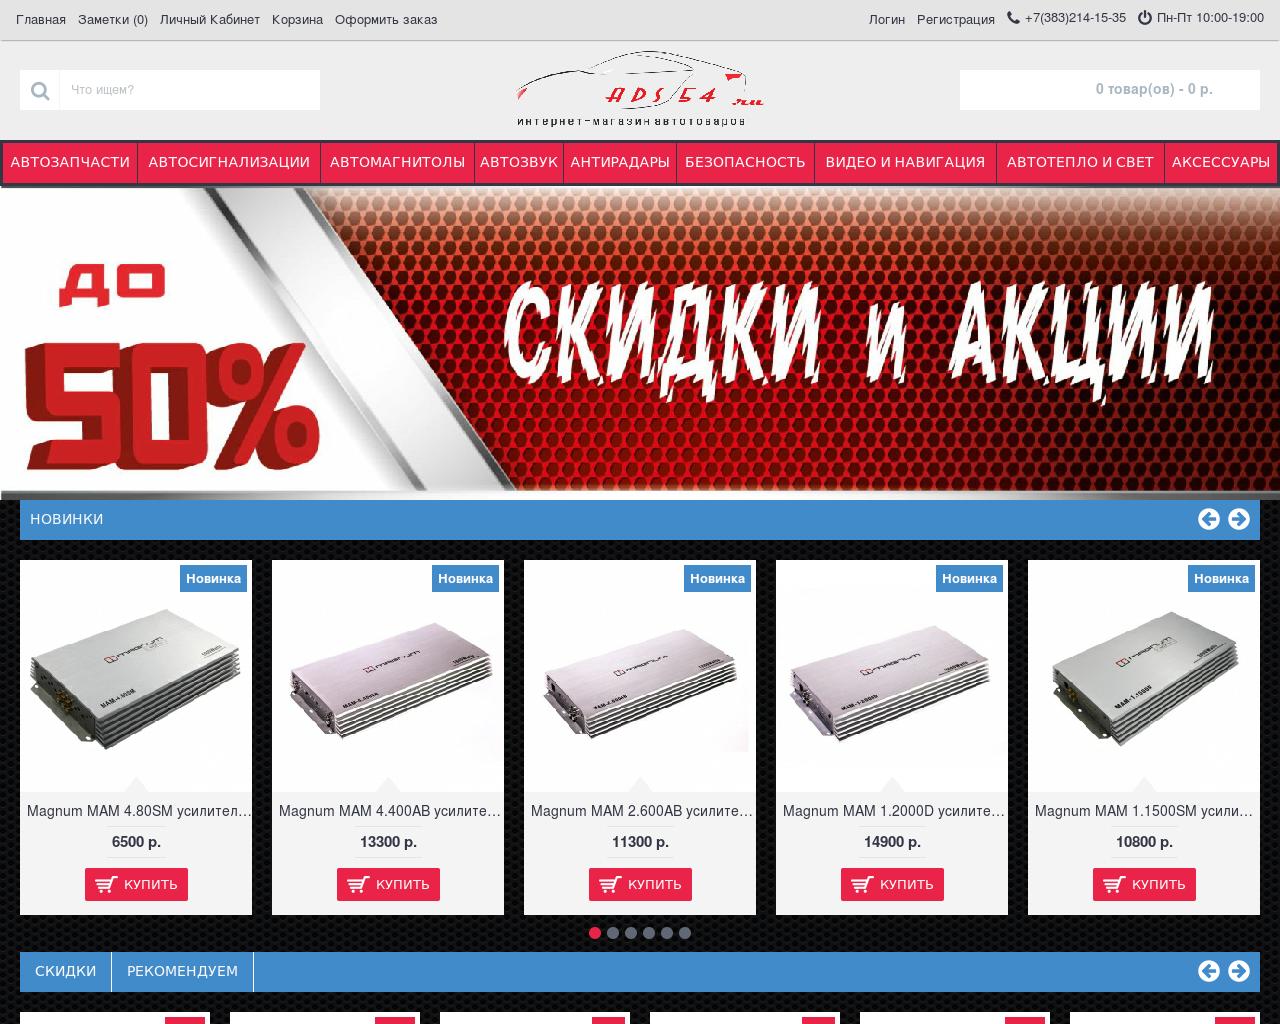 Изображение сайта ads54.ru в разрешении 1280x1024